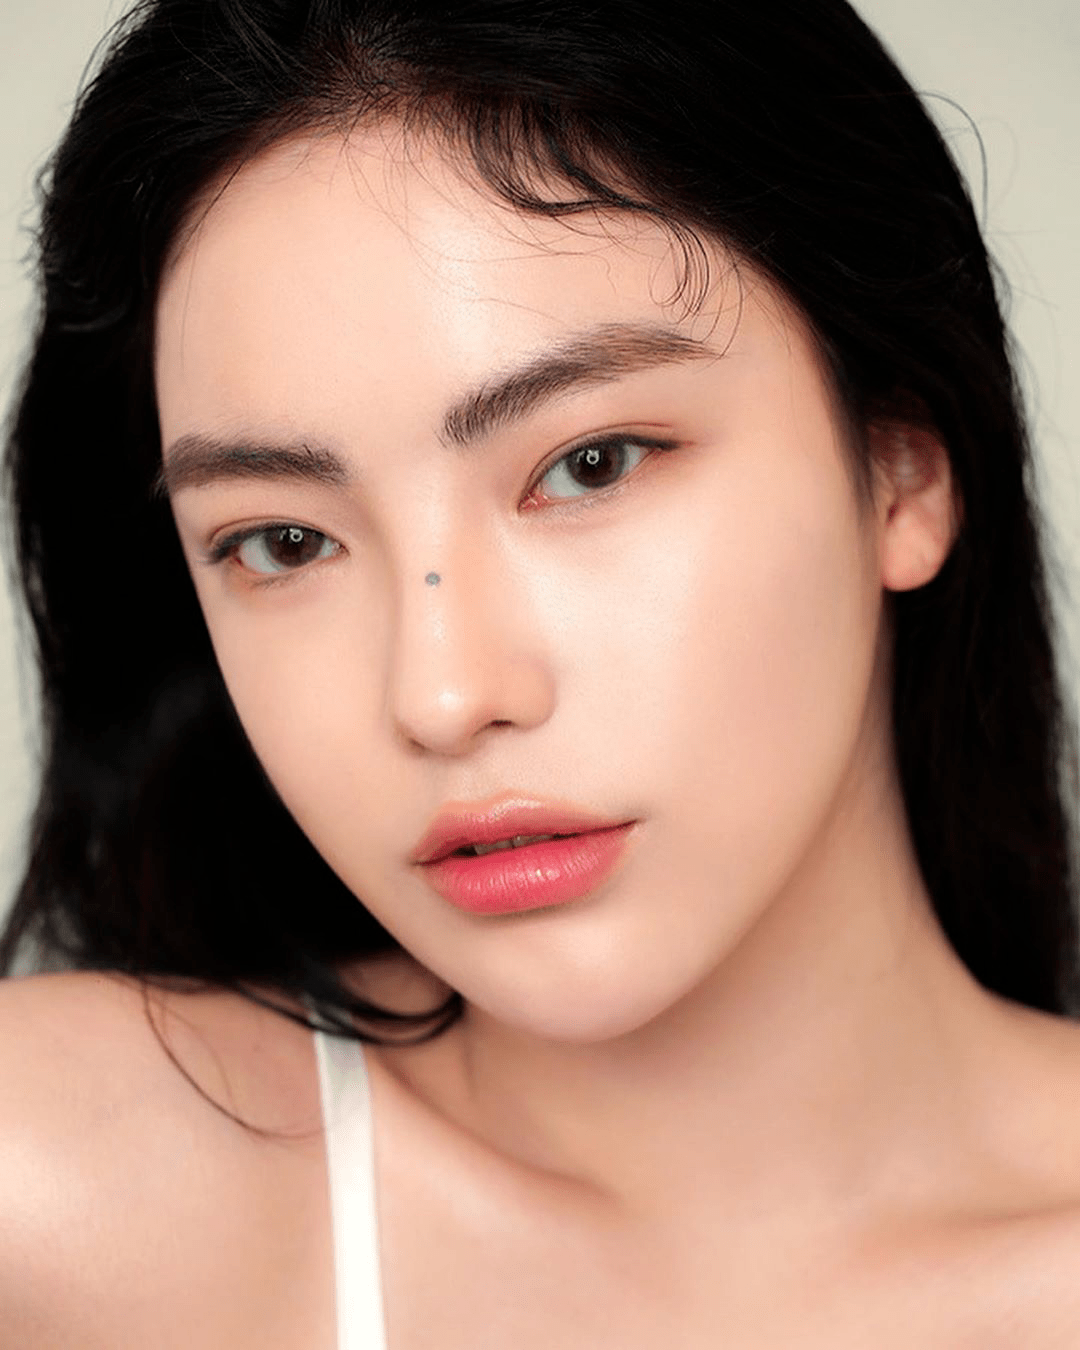 她就是韩国知名彩妆品牌的新御用模特——  安敏智.